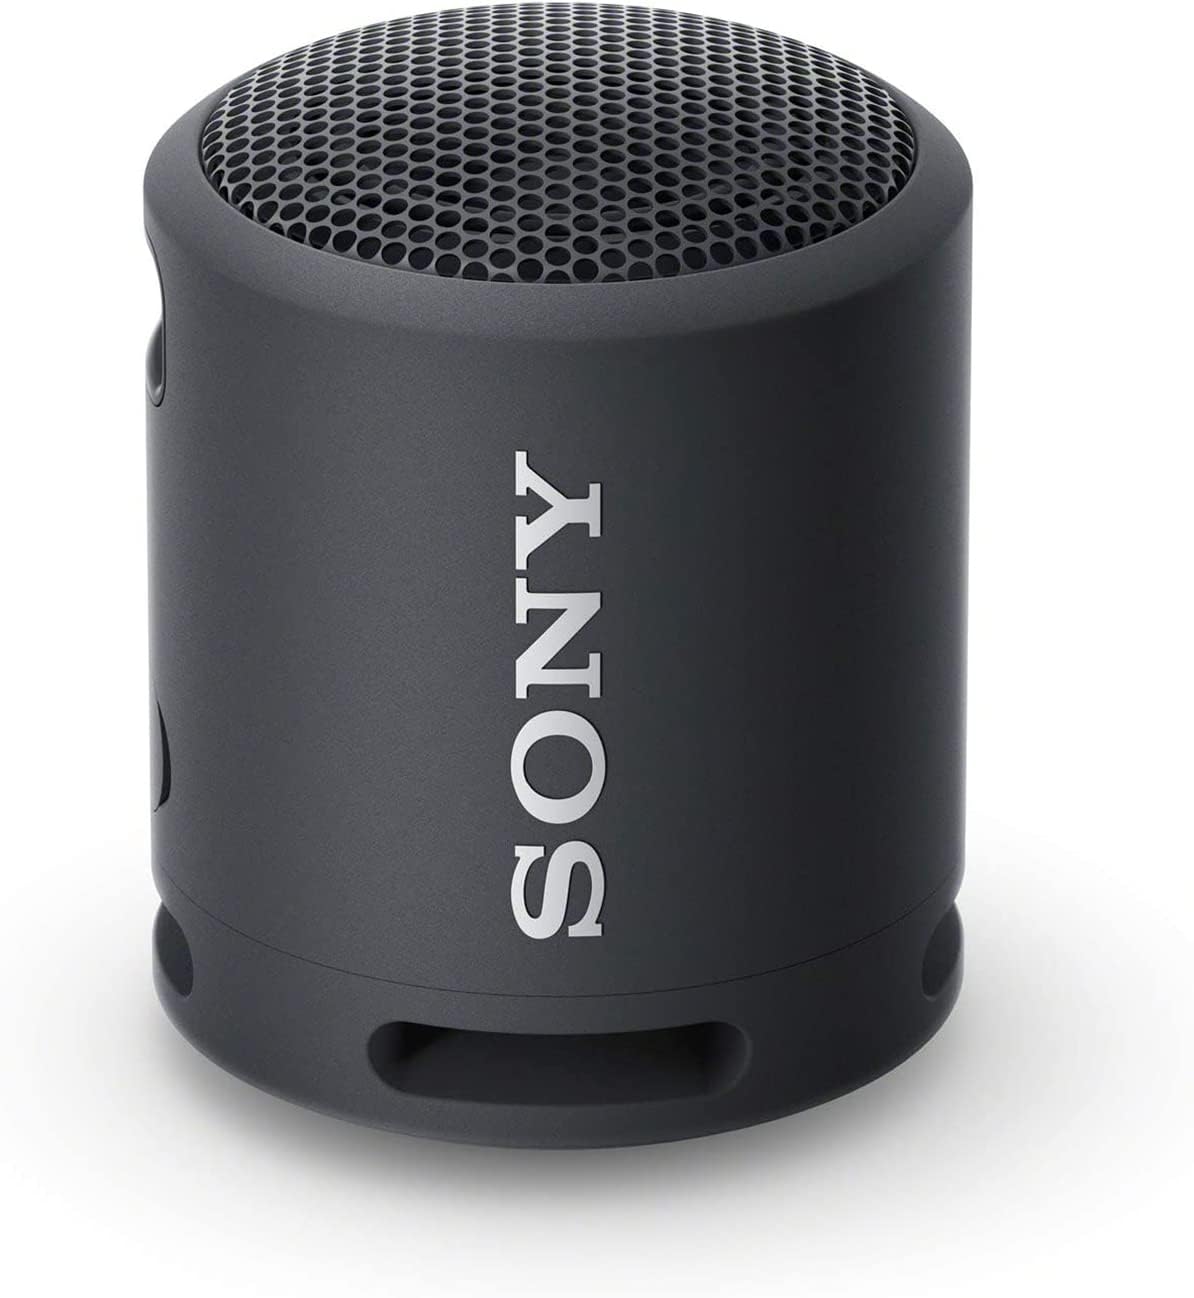 Sony Srs-Xb13 Extra Bass Altavoz Compacto Portátil Inalámbrico Ip67 Impermeable Bluetooth, Negro